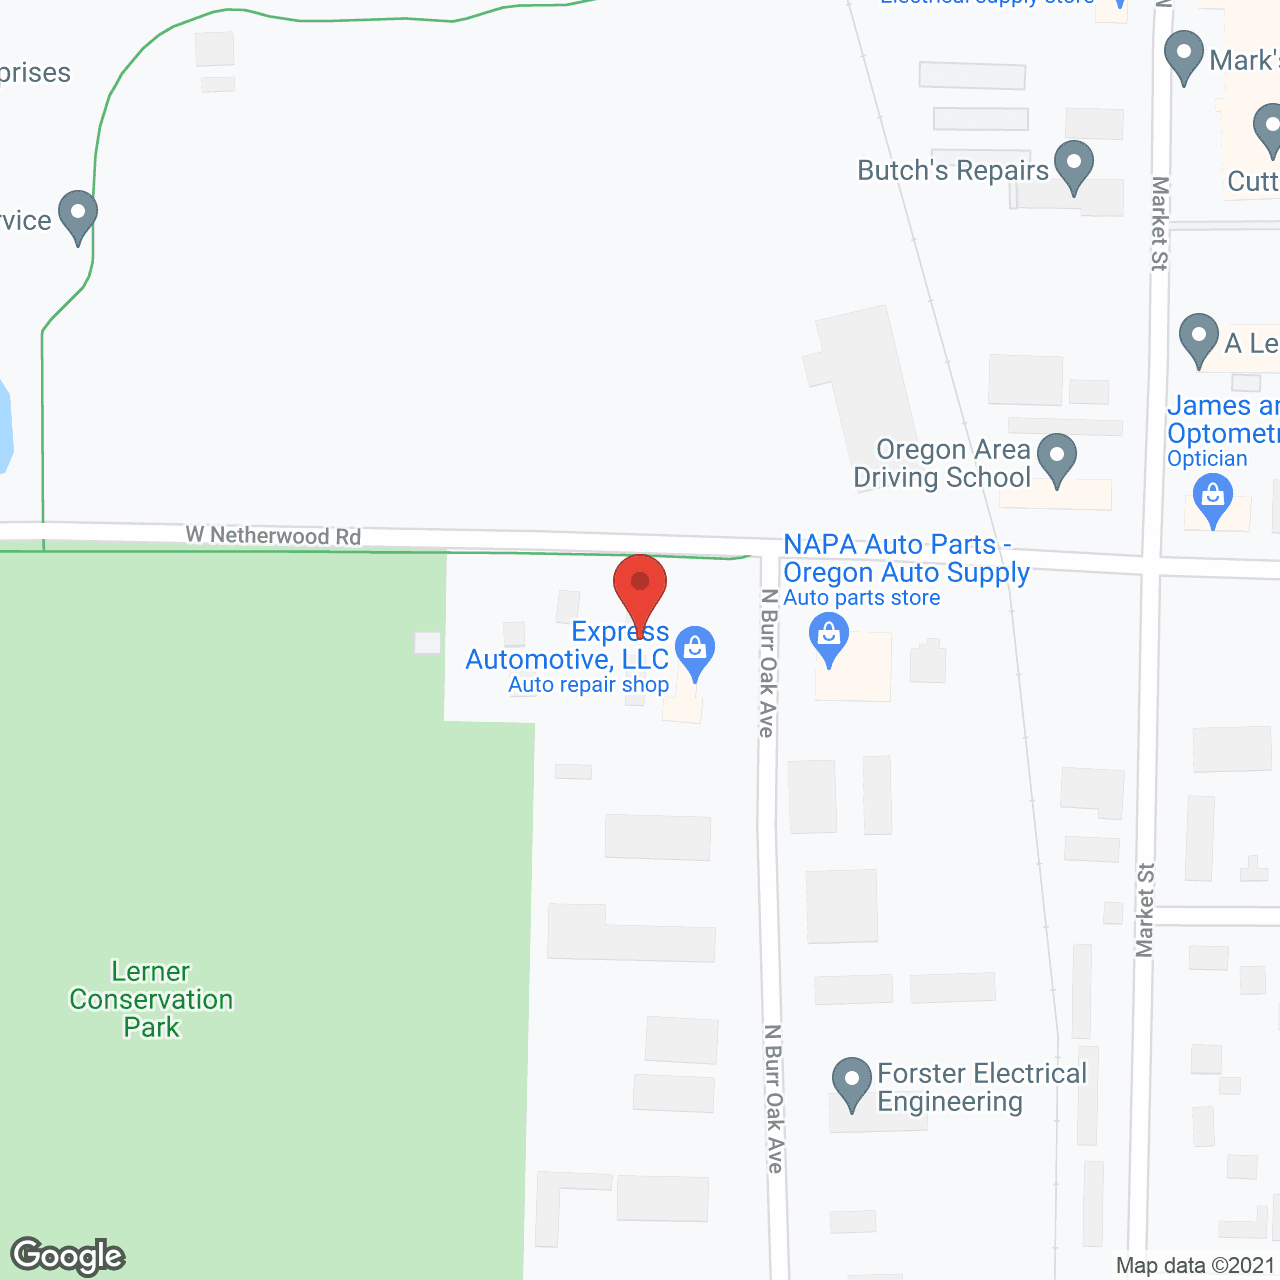 Genesis Housing in google map